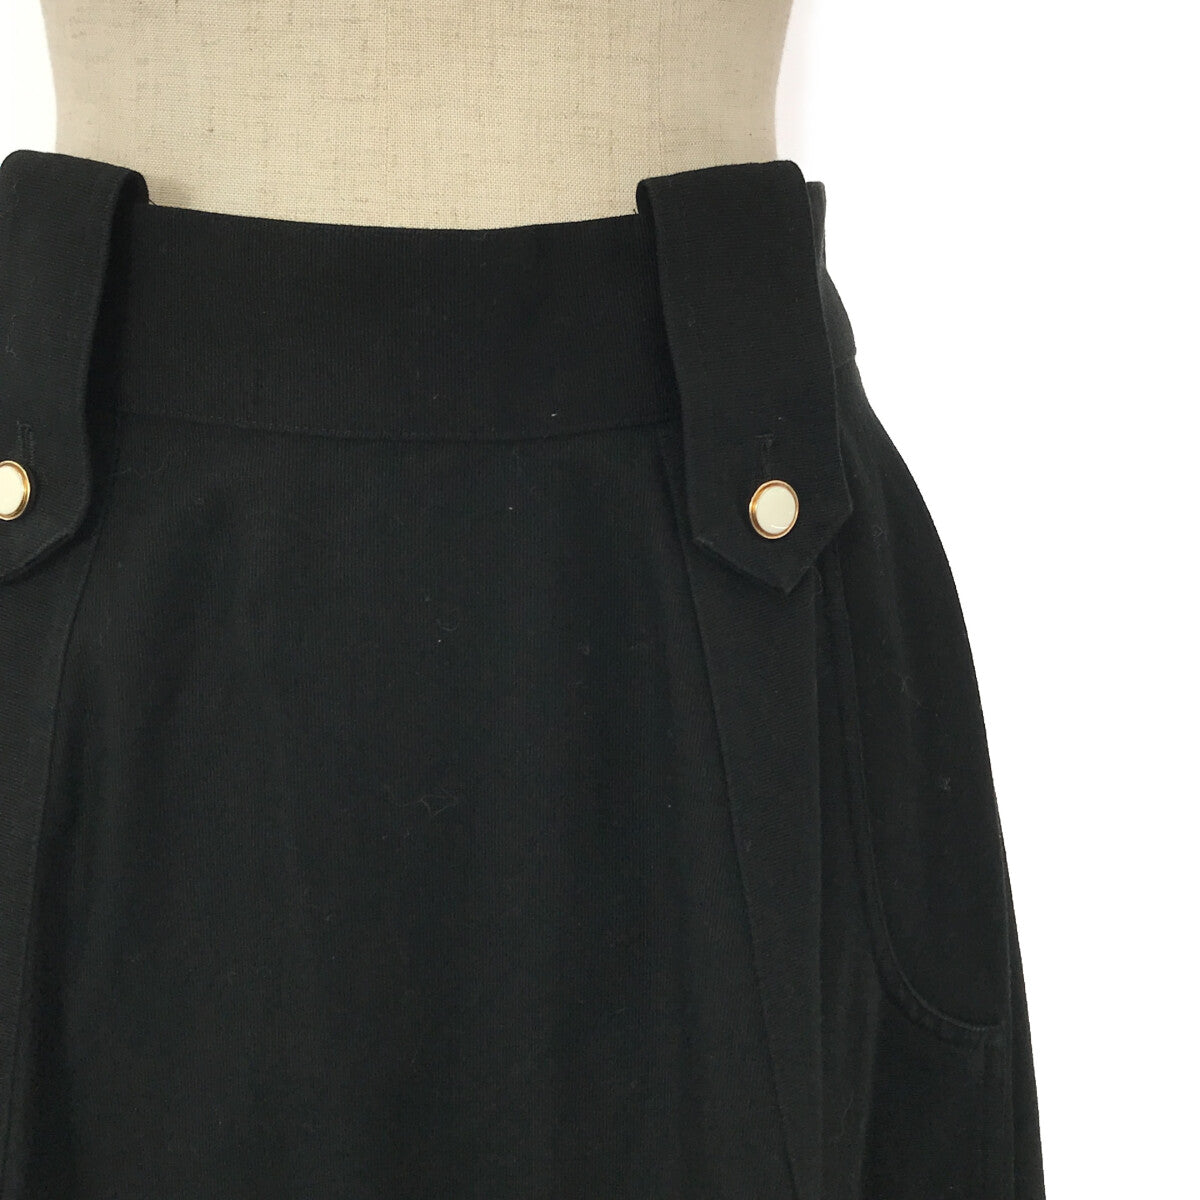 foufou / フーフー | the museum skirt スカート | M | レディース